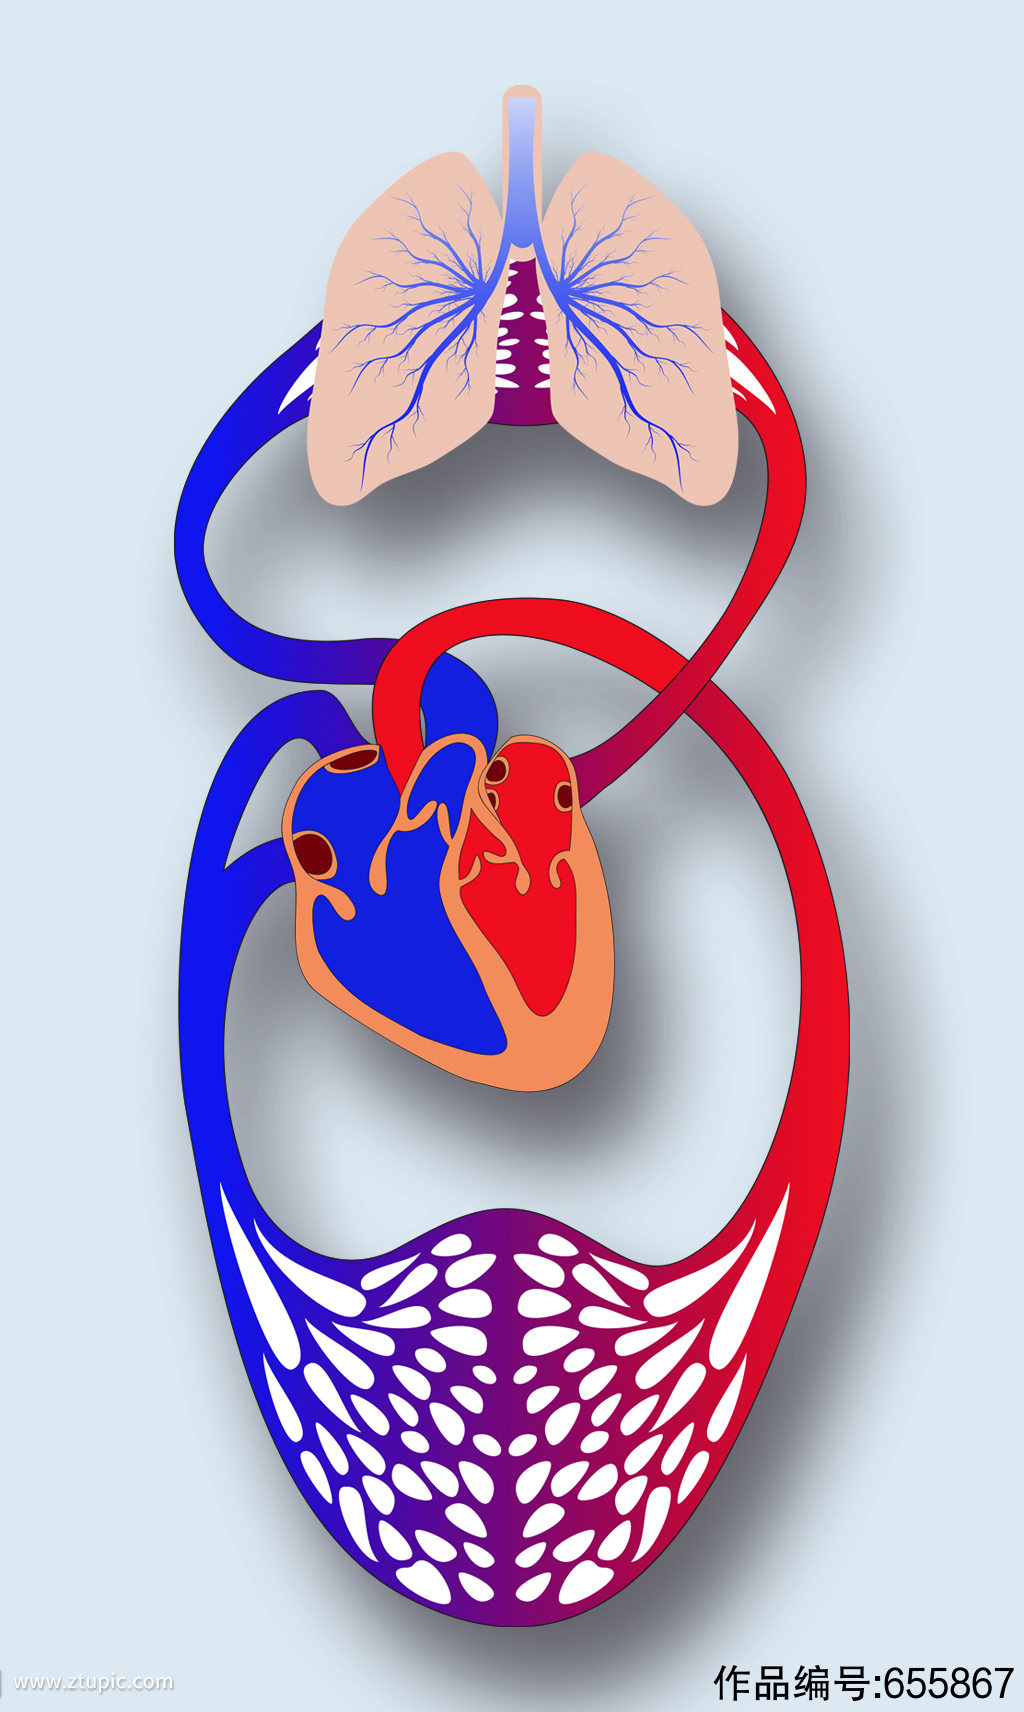 人体循环系统病症解析图医学器官解剖插图